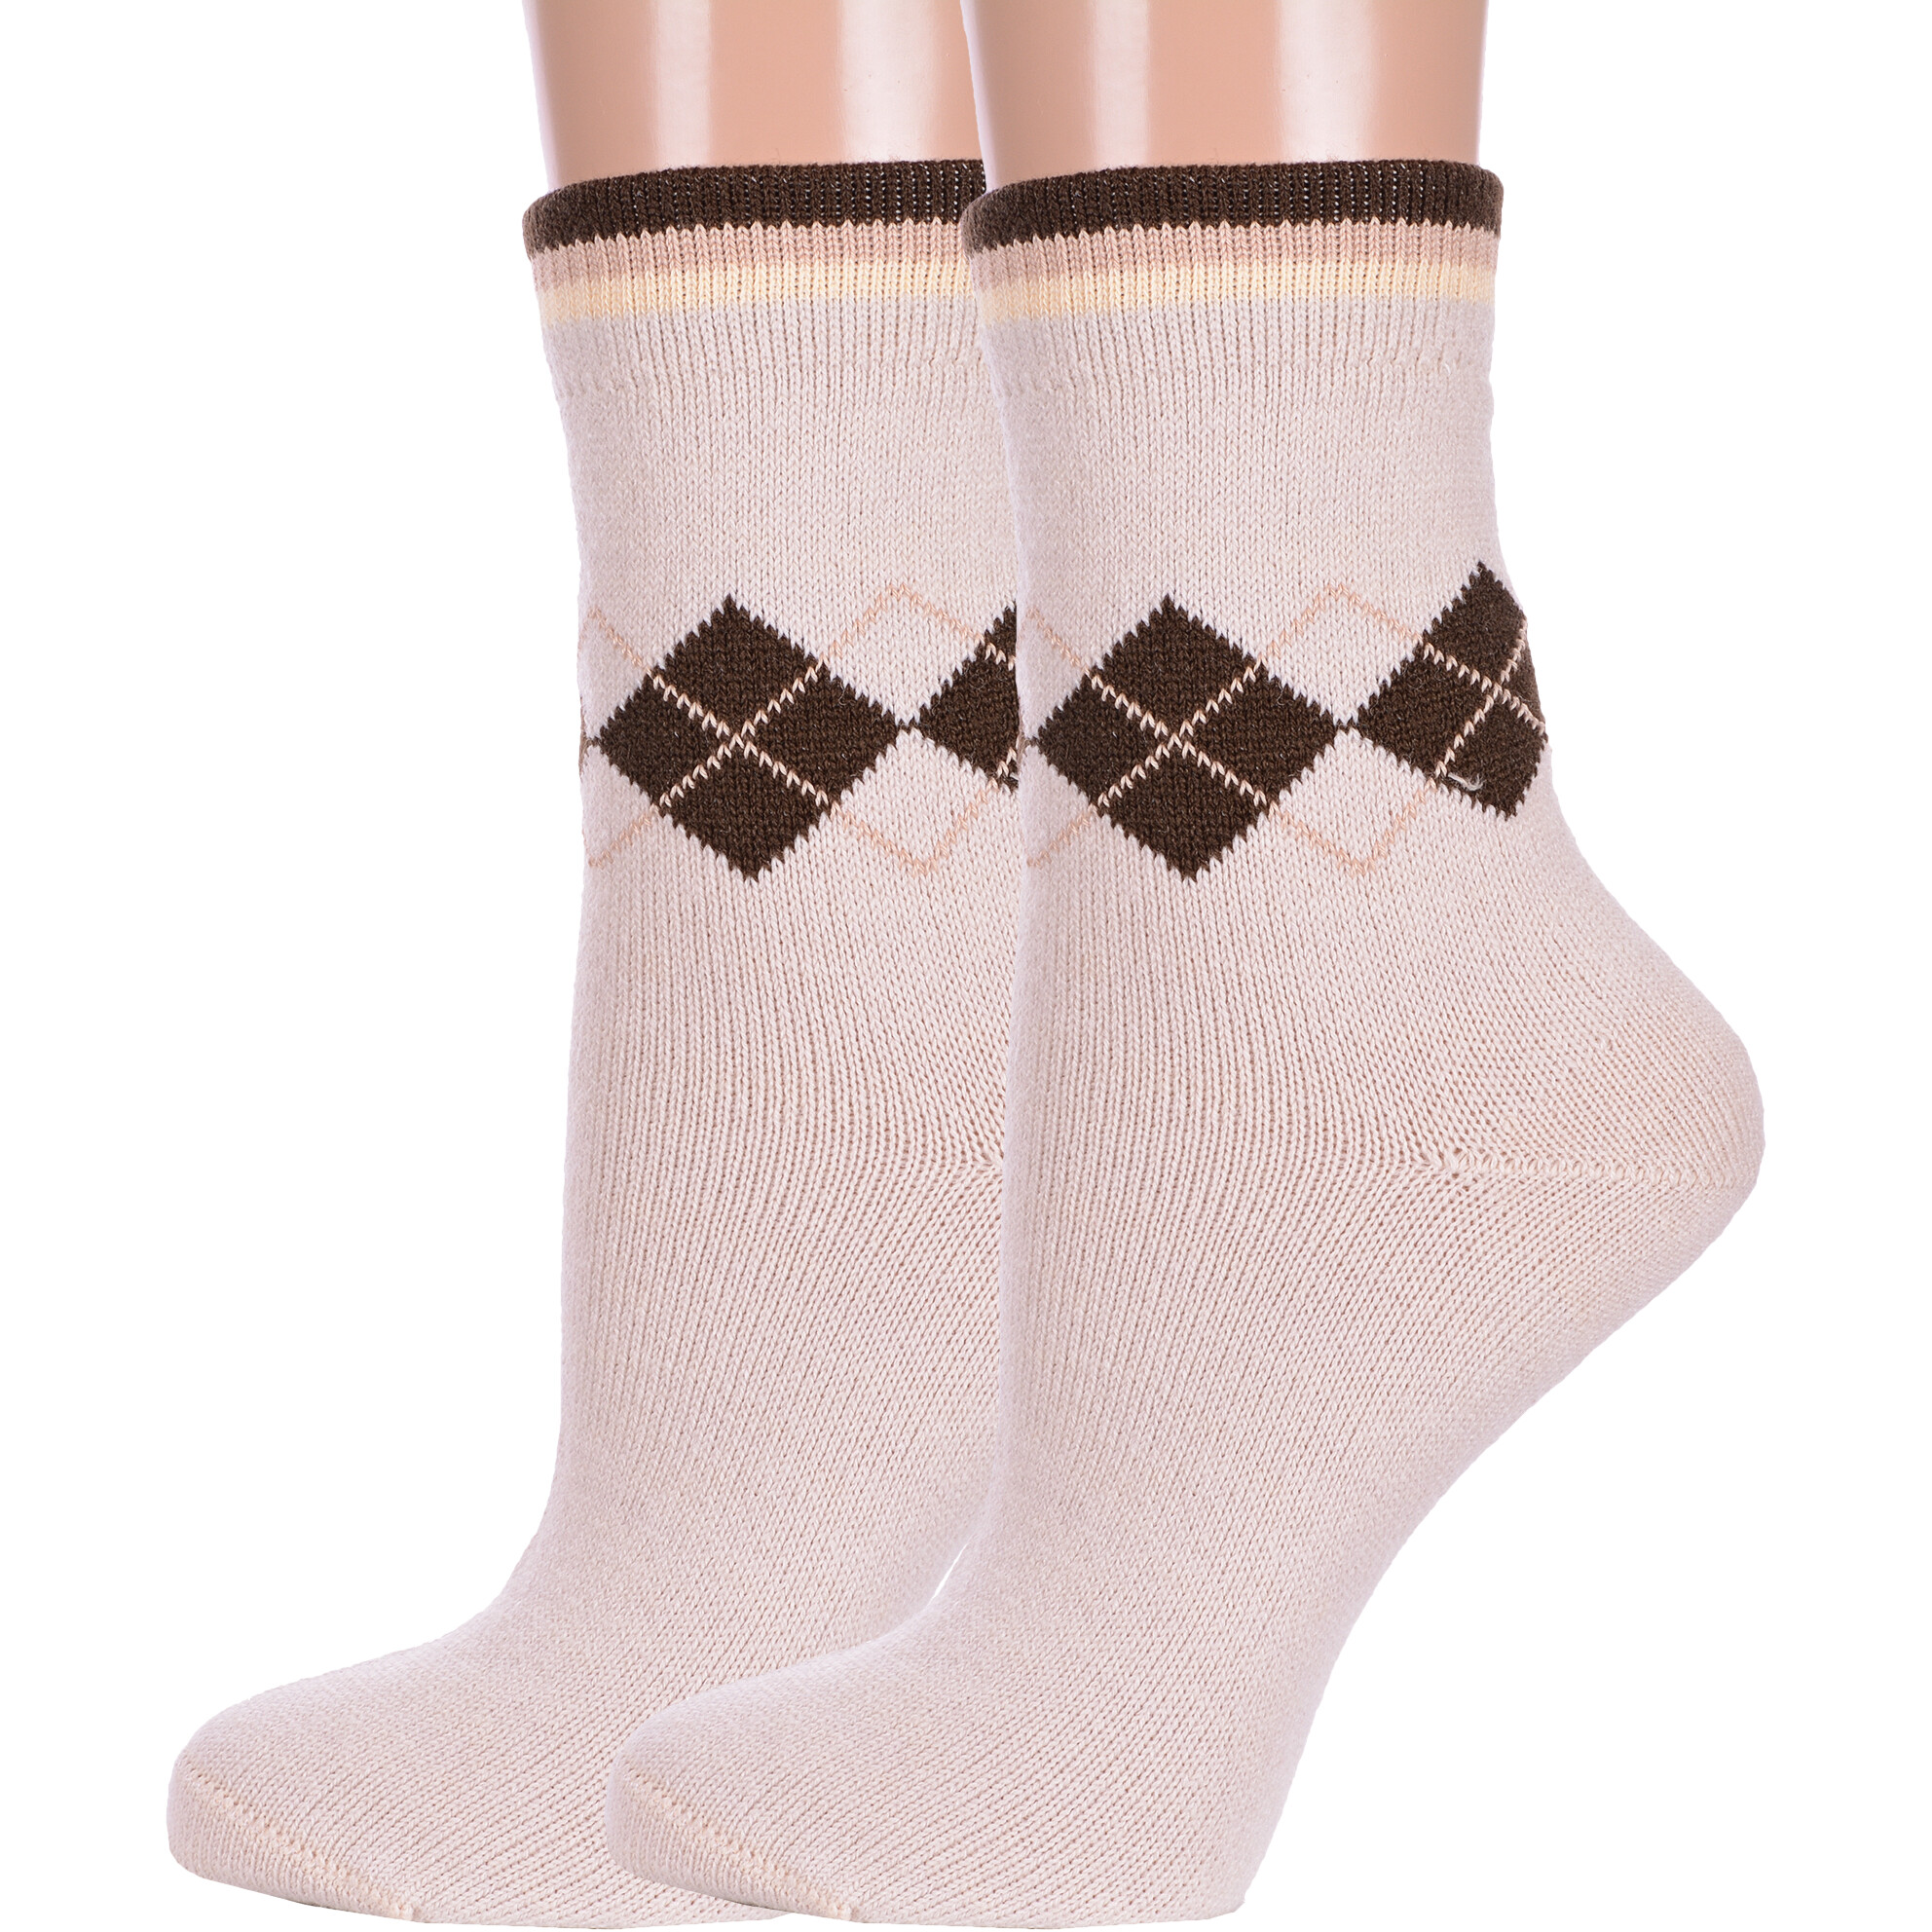 Комплект носков женских LorenzLine 2-В17 бежевых 25 2 пары